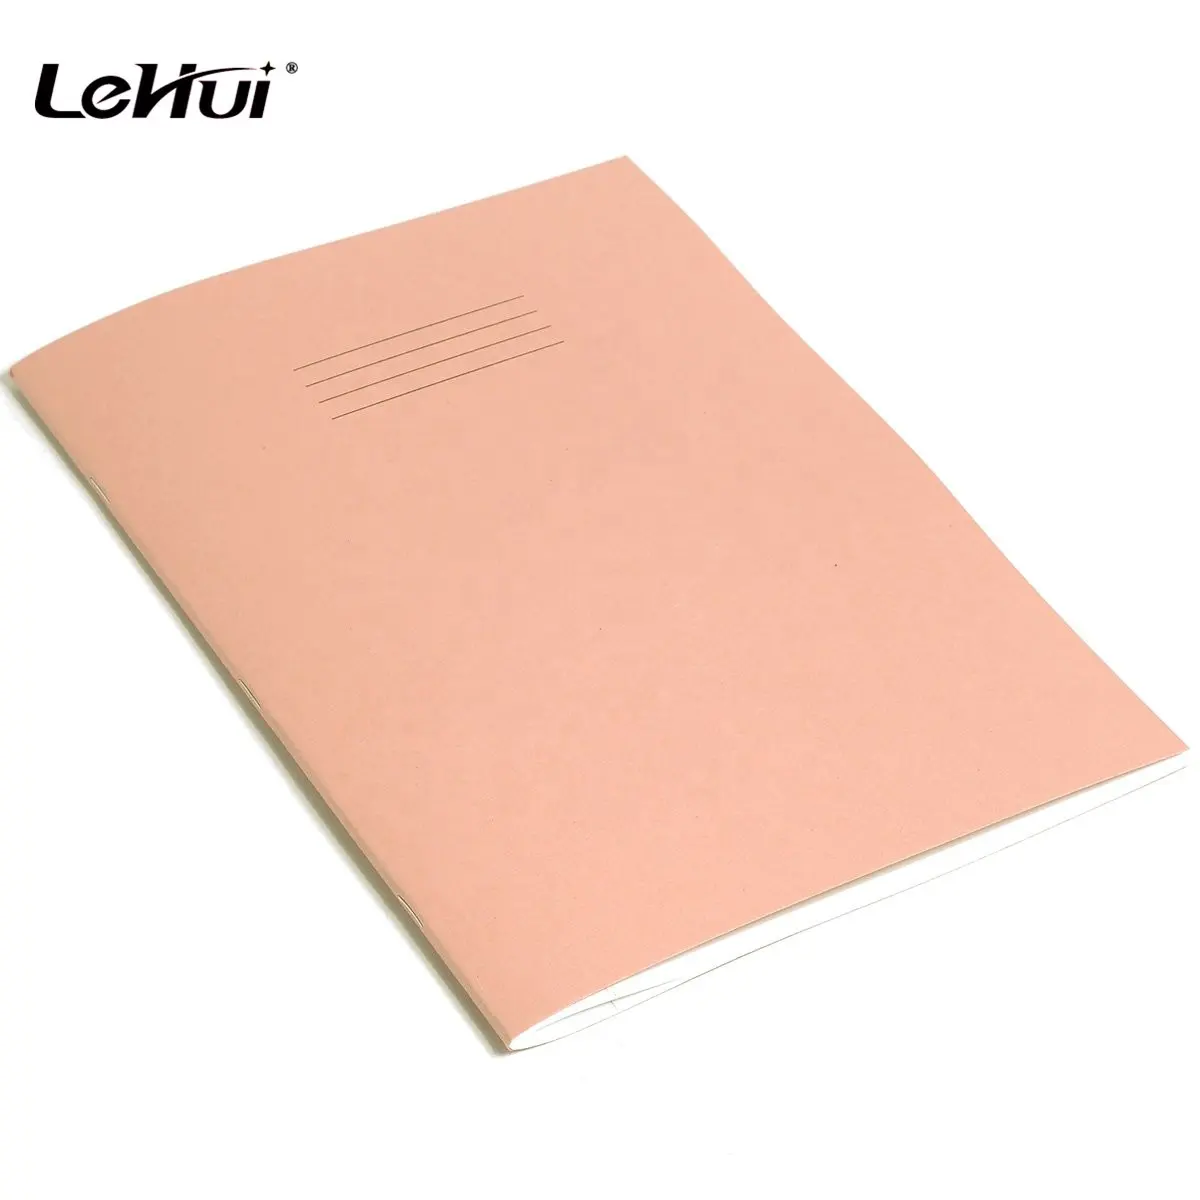 مصنع Lehui ورقي ابتدائي رخيص من المصنع مقاس A4 وردي 80 صفحة مبطنة لأطفال المدارس